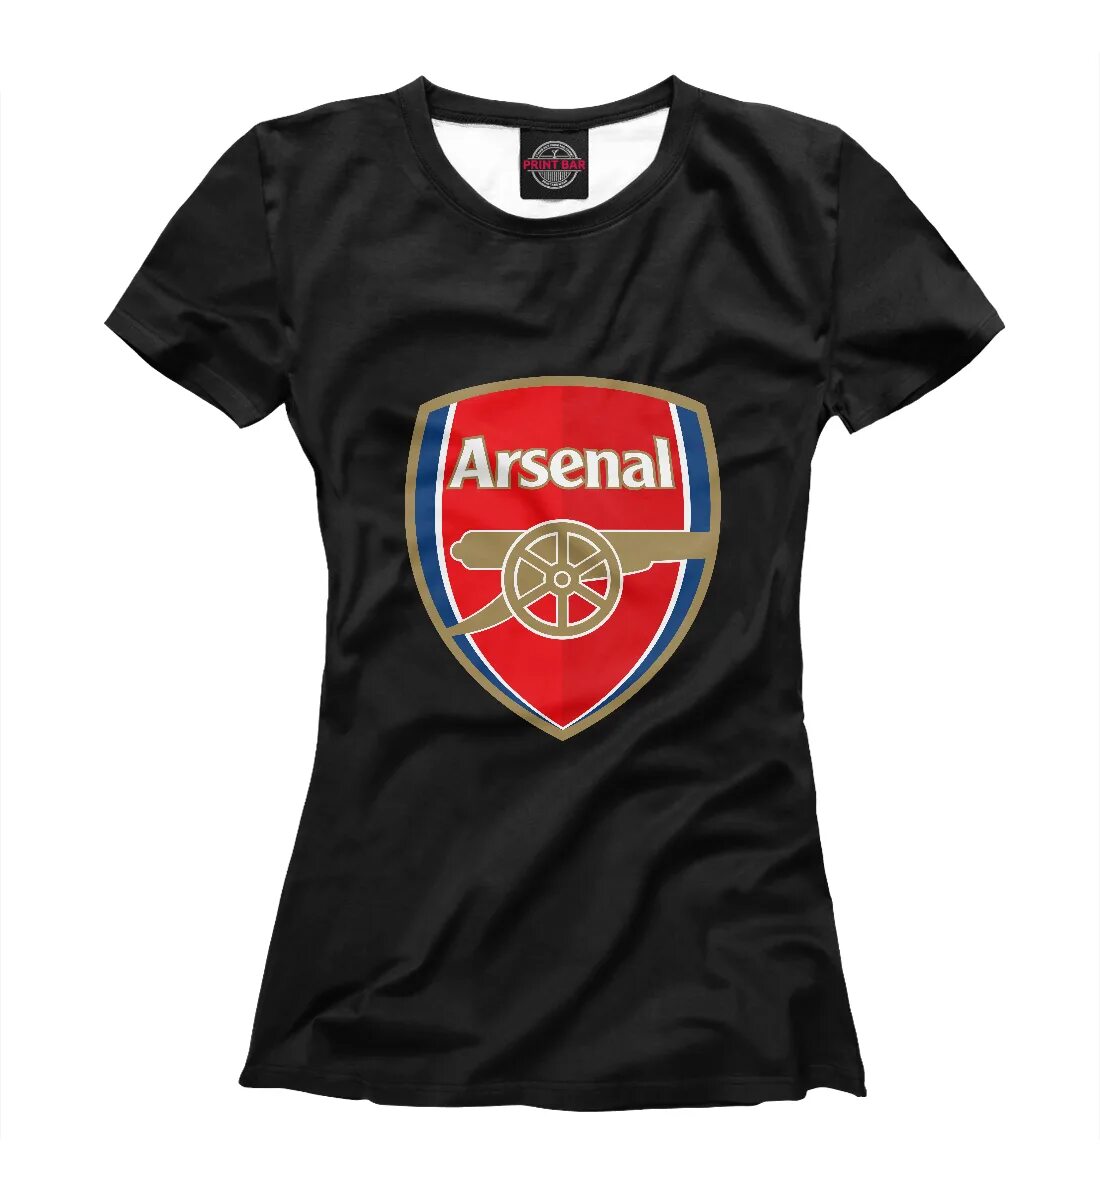 Футболка арсенал купить. Arsenal футболка. Футболка Арсенал. Аксессуар Арсенал. FC Arsenal girl.